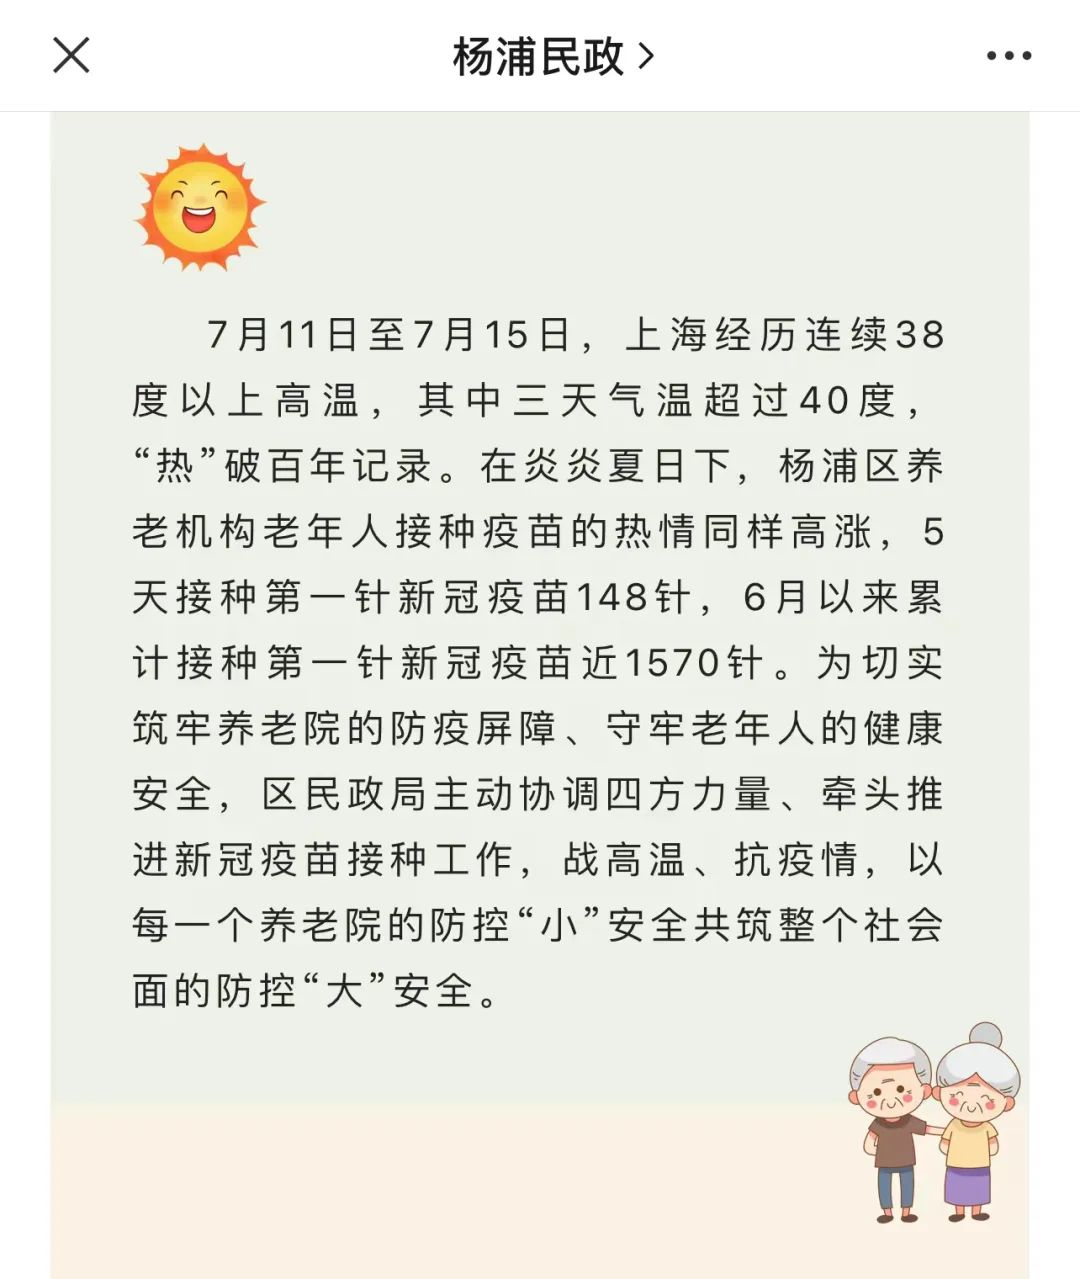 【线索】上海养老院的老人正在被围猎